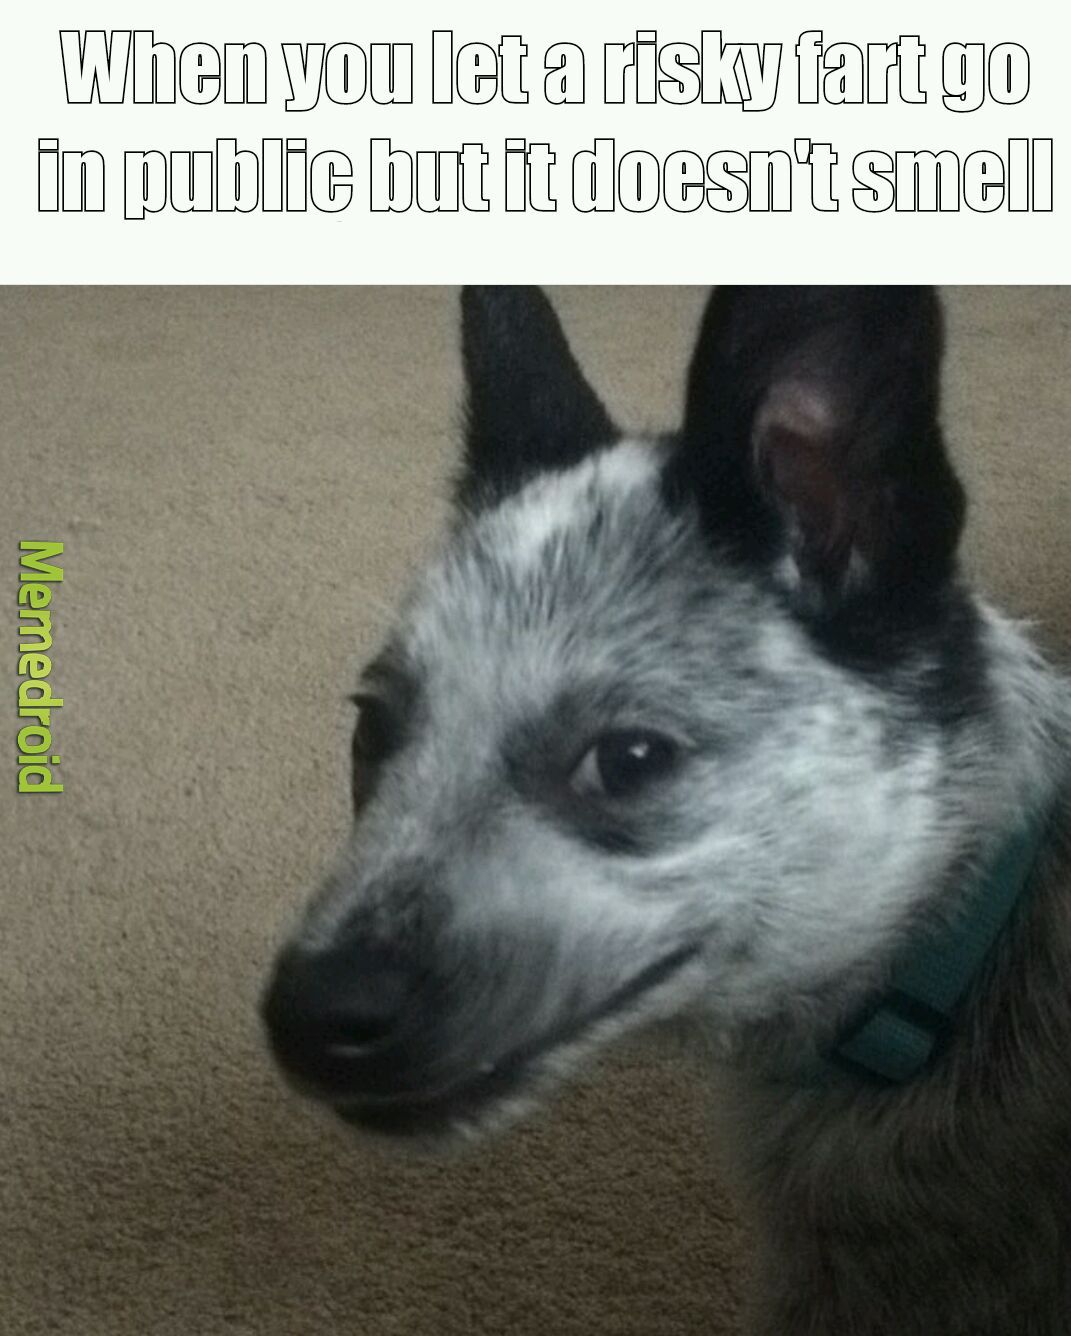 Dog farts smell like death camps - meme